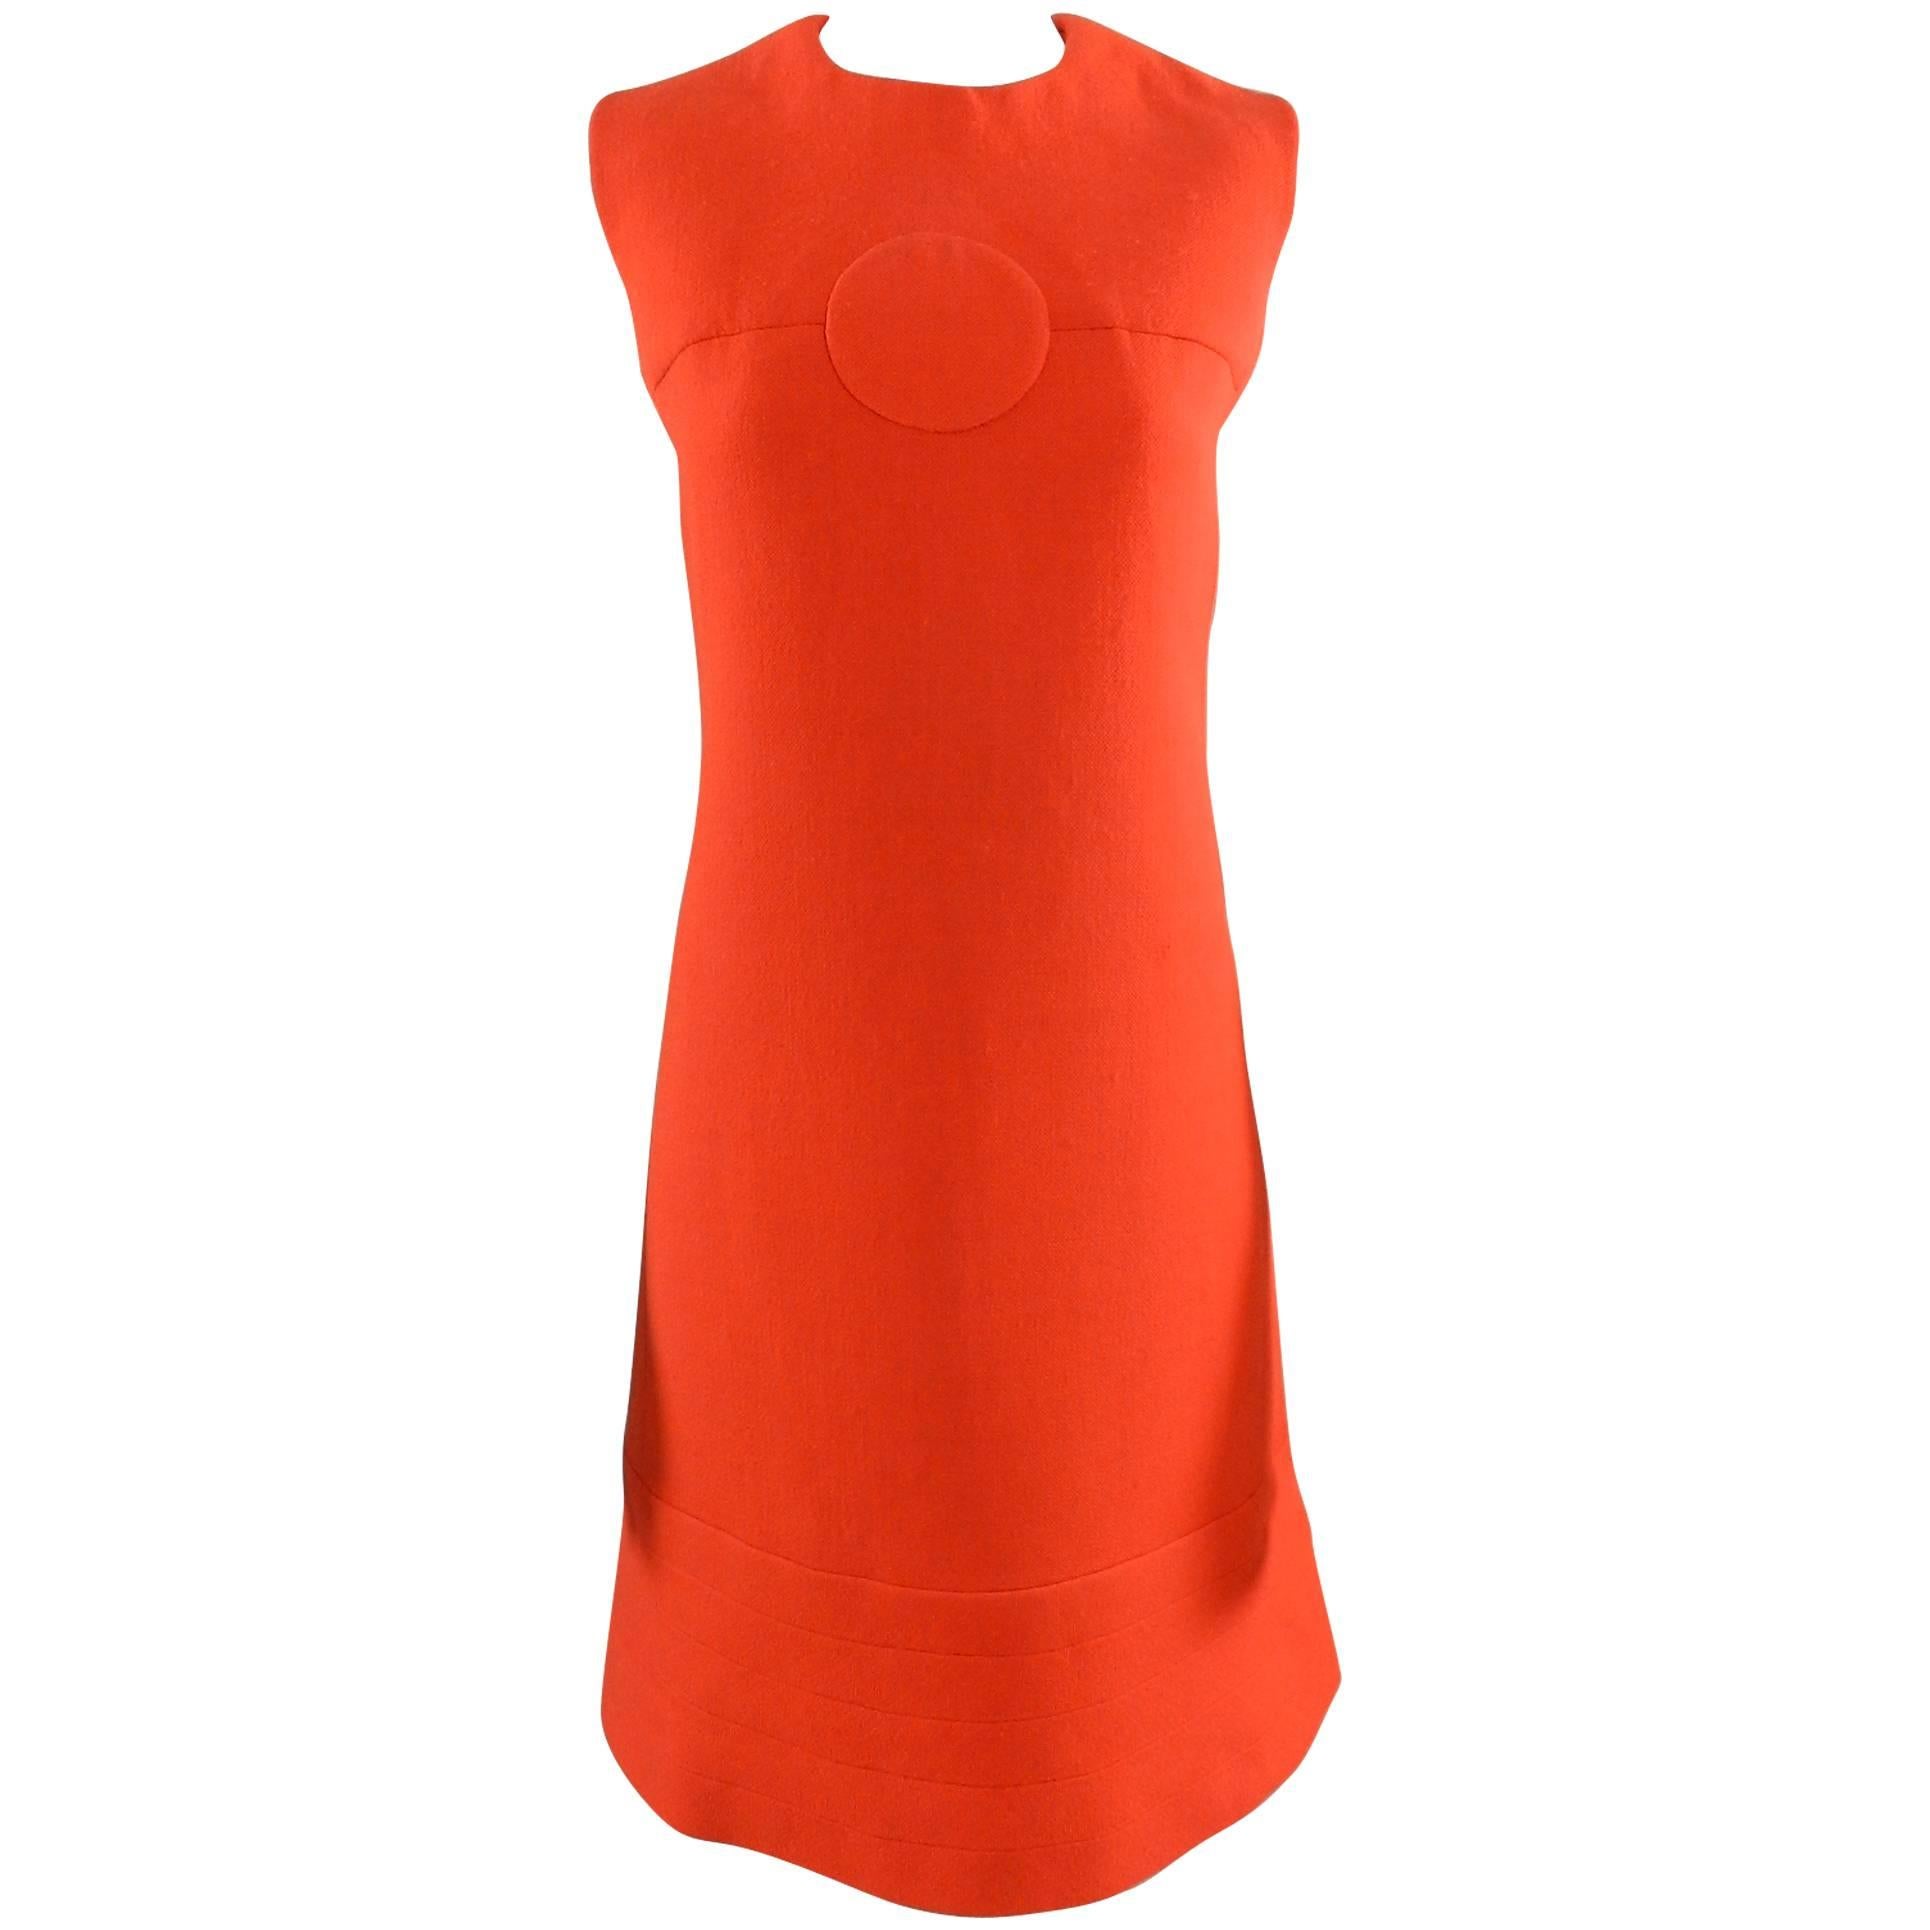 Pierre Cardin Vintage 1960's Orange Wool Mod Dress